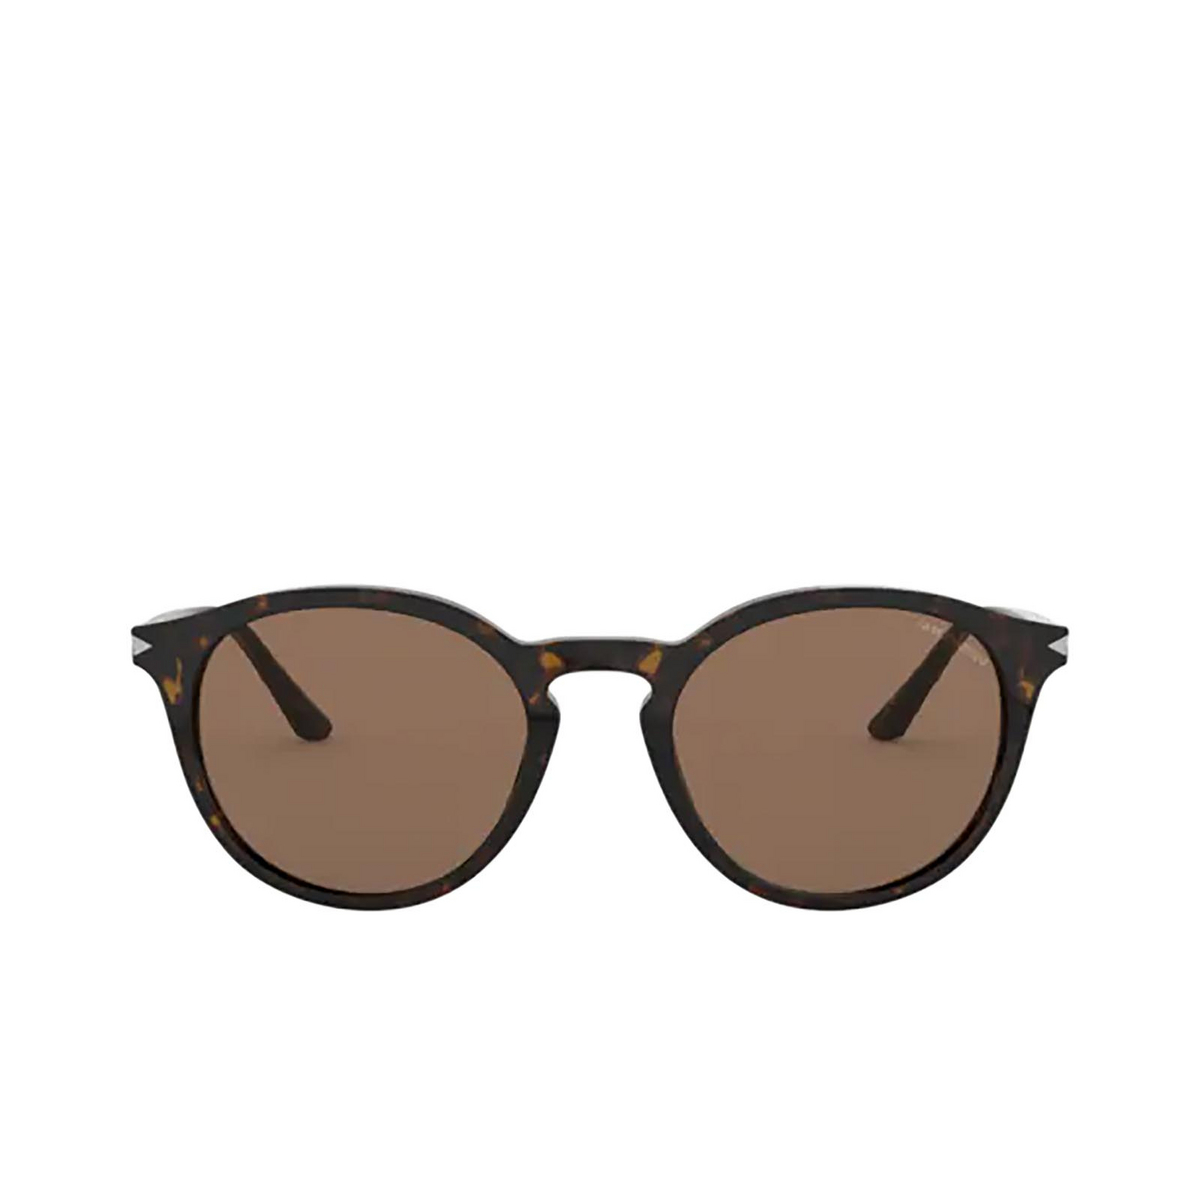 Giorgio Armani® Round Sunglasses: AR8122 color Havana 502673 - front view.